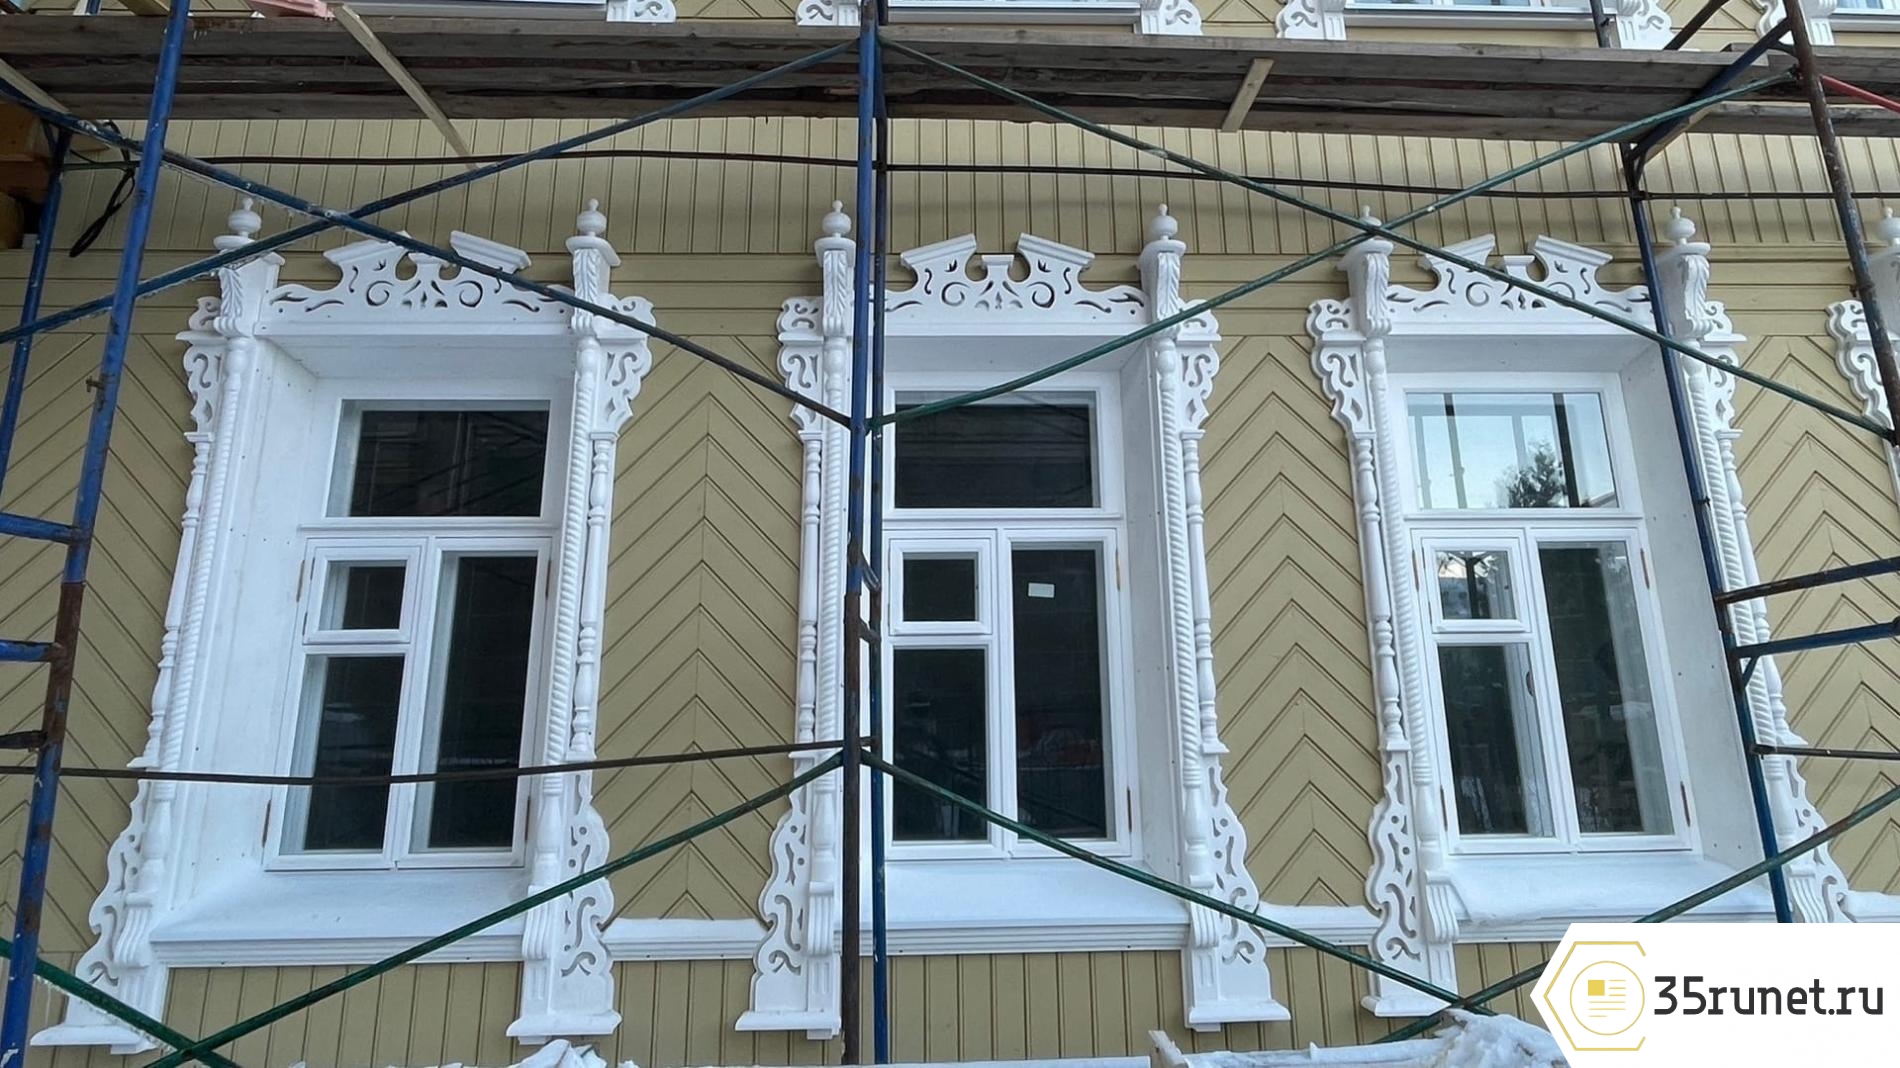 Бутик-отель с интерьером в стиле прошлого века планируют открыть в старинном доме на ул. Лермонтова, 29 в Вологде